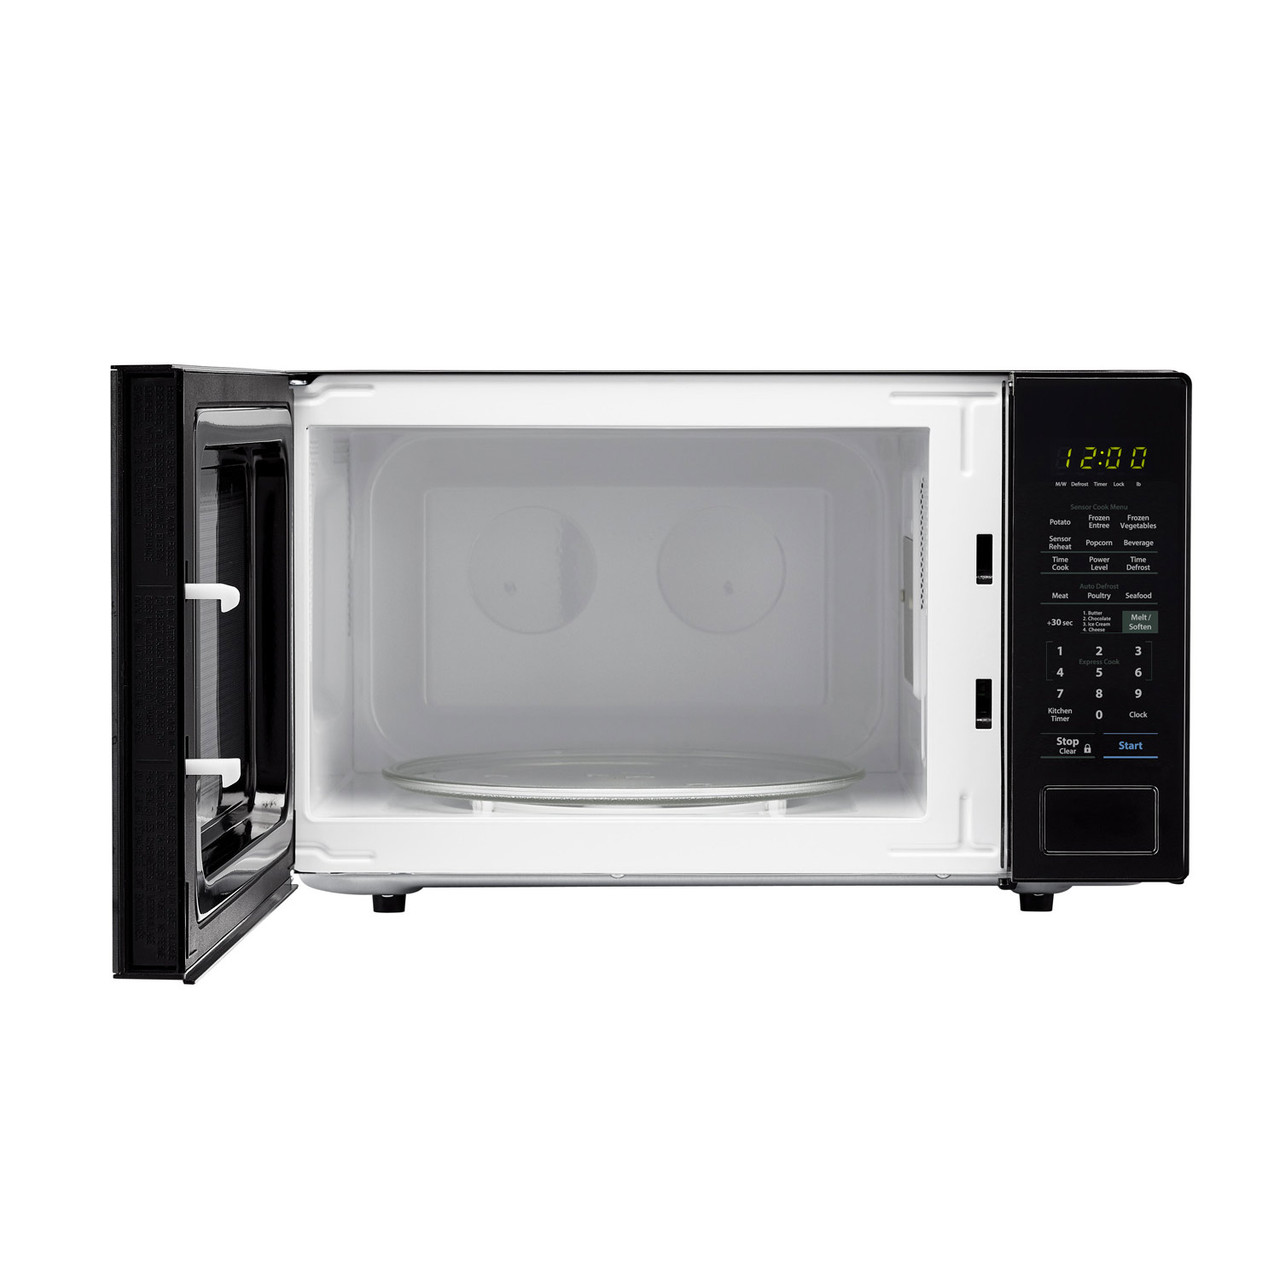 1.4 cu. ft. 1000W Sharp Black Countertop Microwave (SMC1441CB) – front view with door open